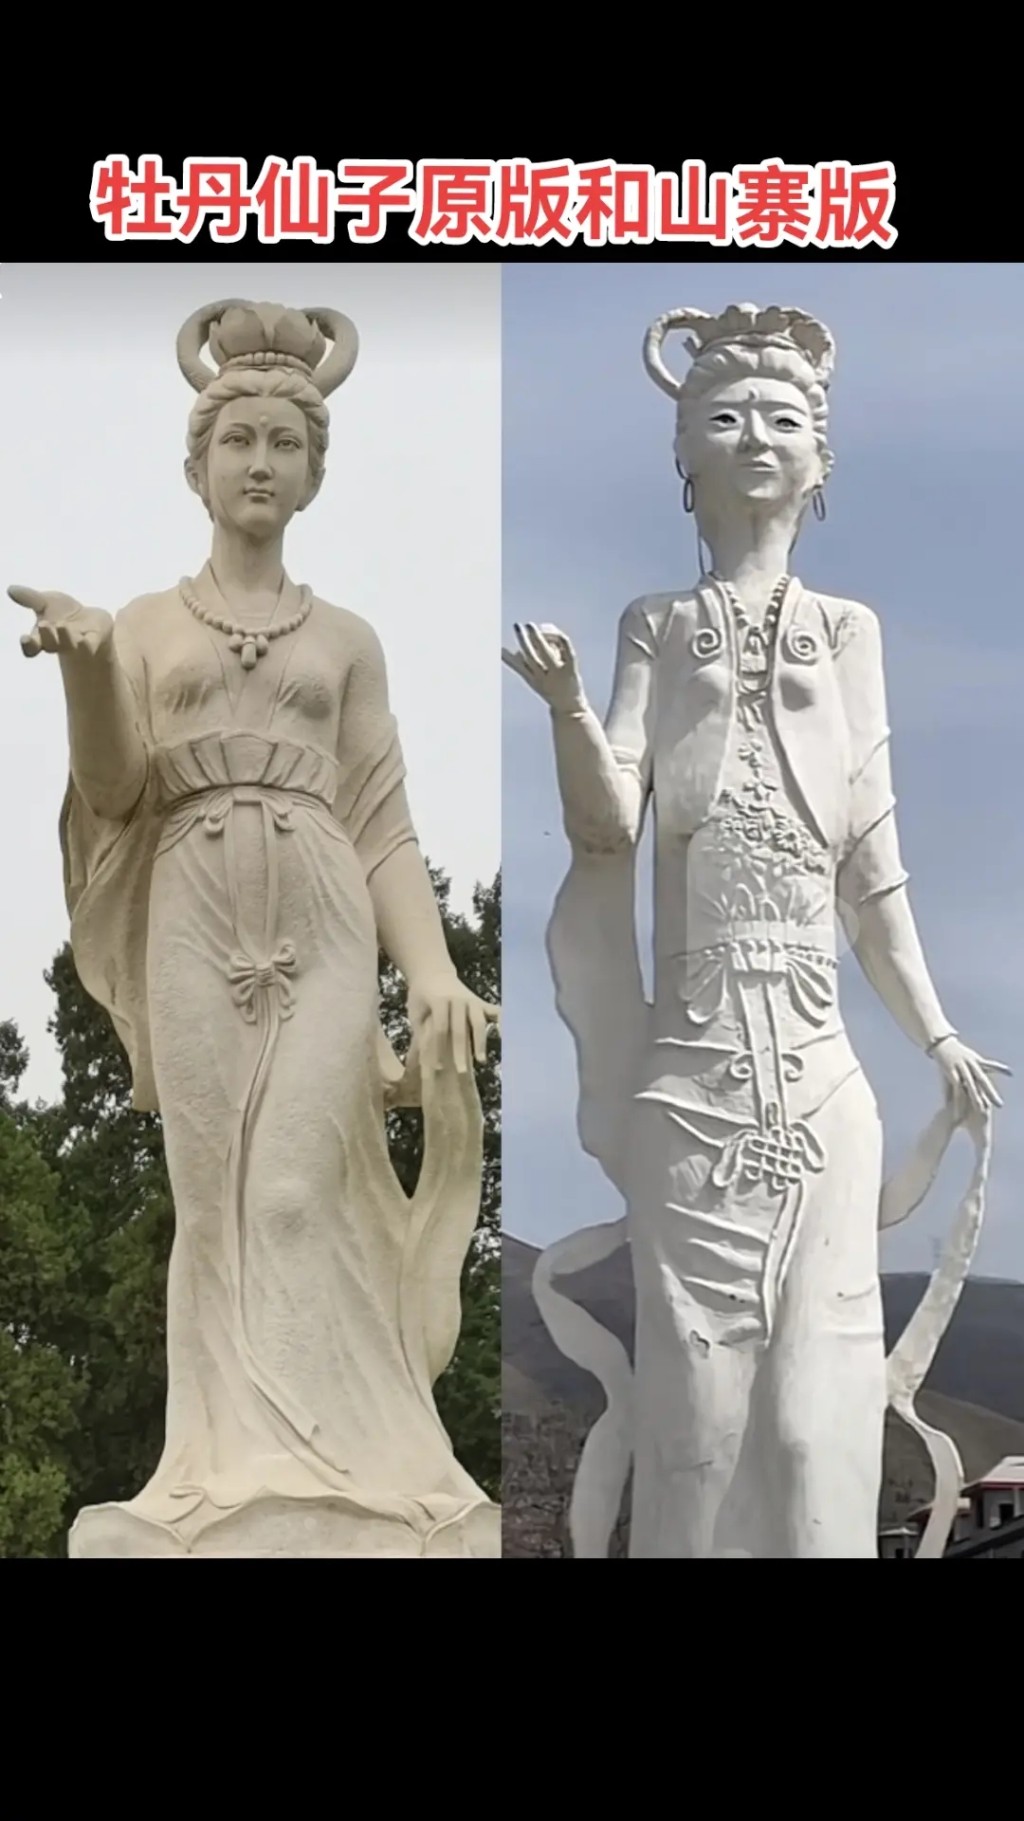 “牡丹仙子”原像和山寨版对比。